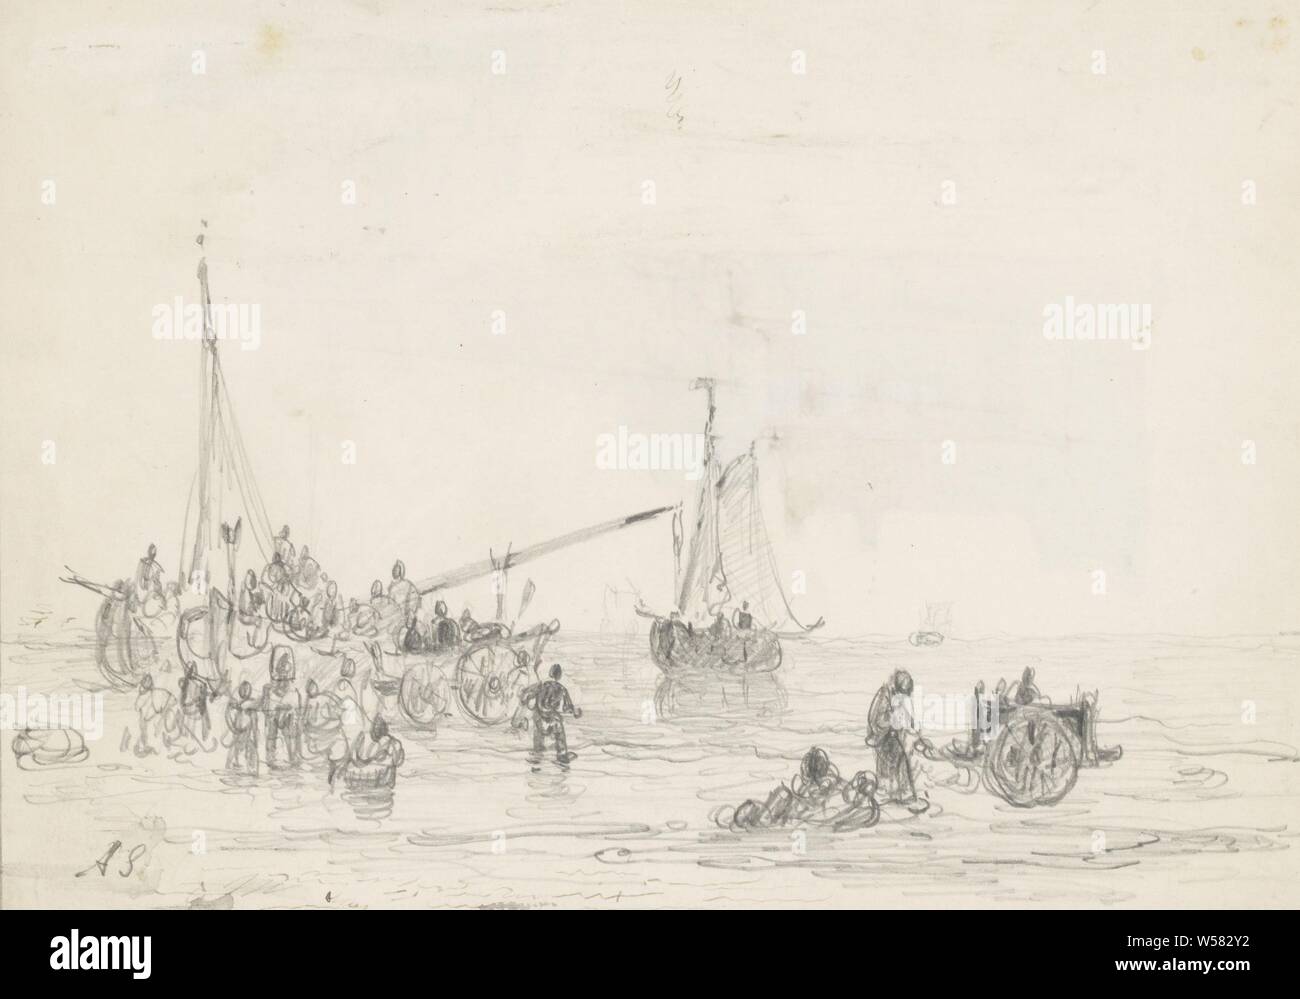 Spiaggia scena con figure nei pressi di una nave, Andreas Schelfhout (firmato dall'artista), 1797 - 1870, carta, inchiostro, matite, penne h 172 mm × W 243 mm Foto Stock